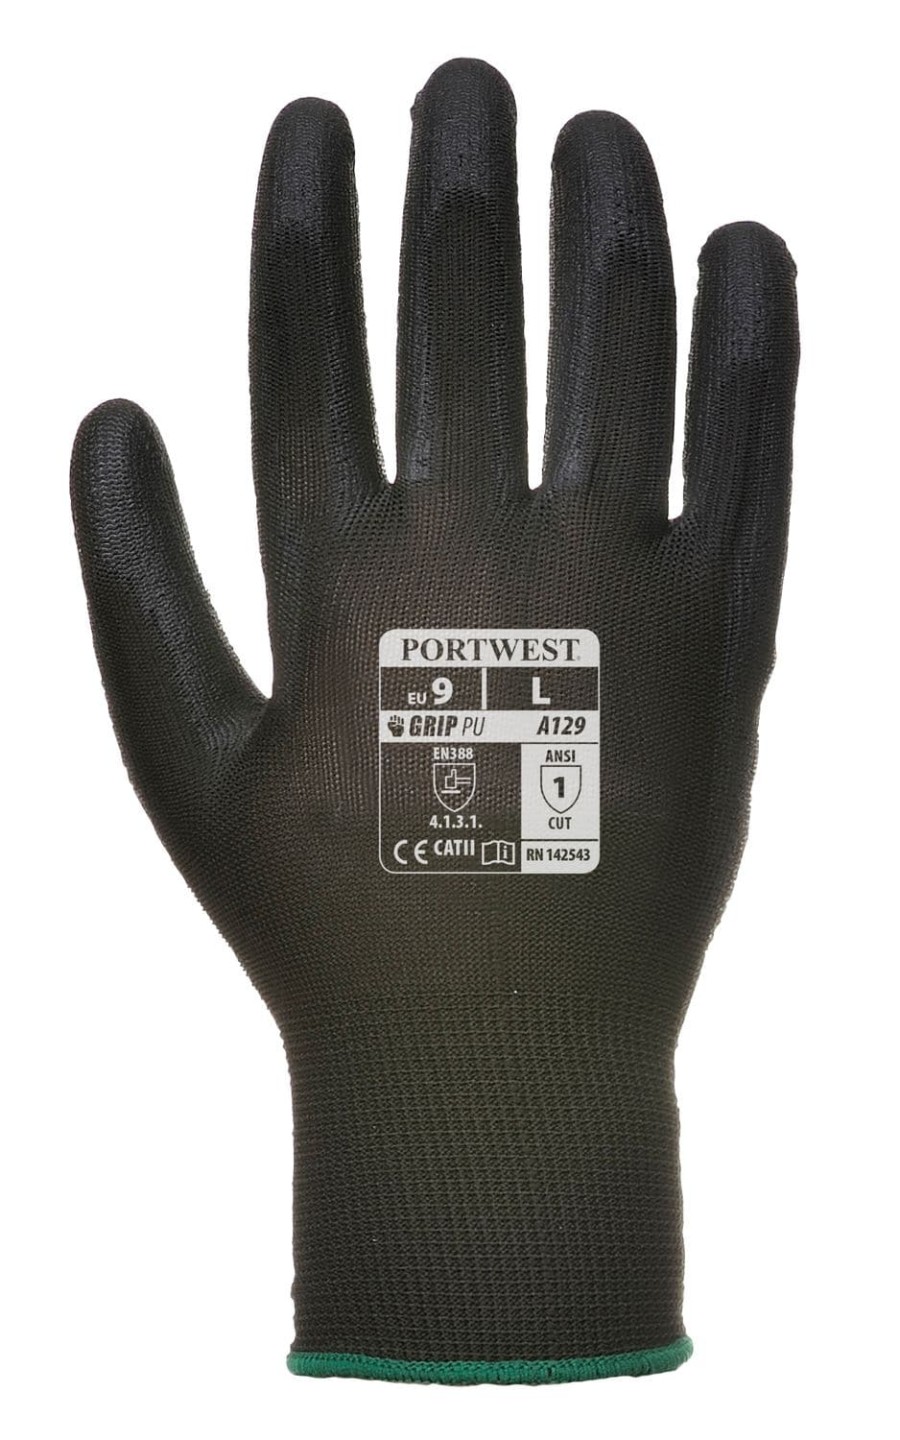 Portwest PU Palm Glove (480 pairs)